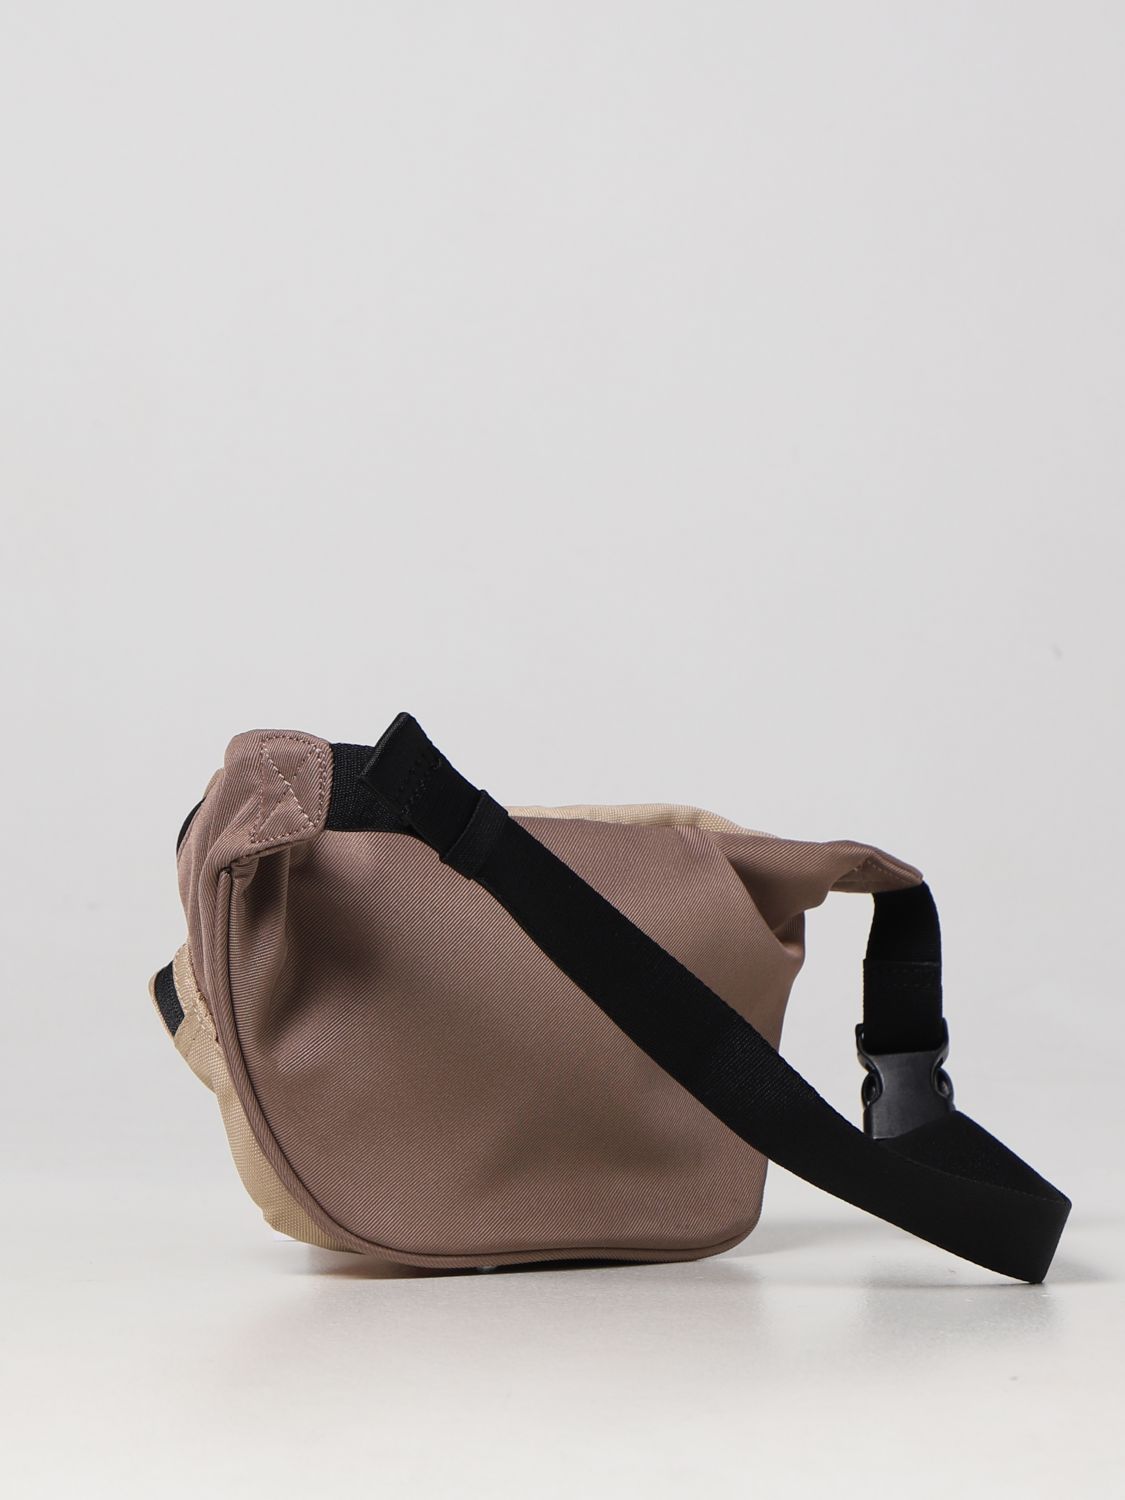 CALVIN KLEIN JEANS: belt bag for man - Beige | Calvin Klein Jeans belt bag  K50K510090 online on 